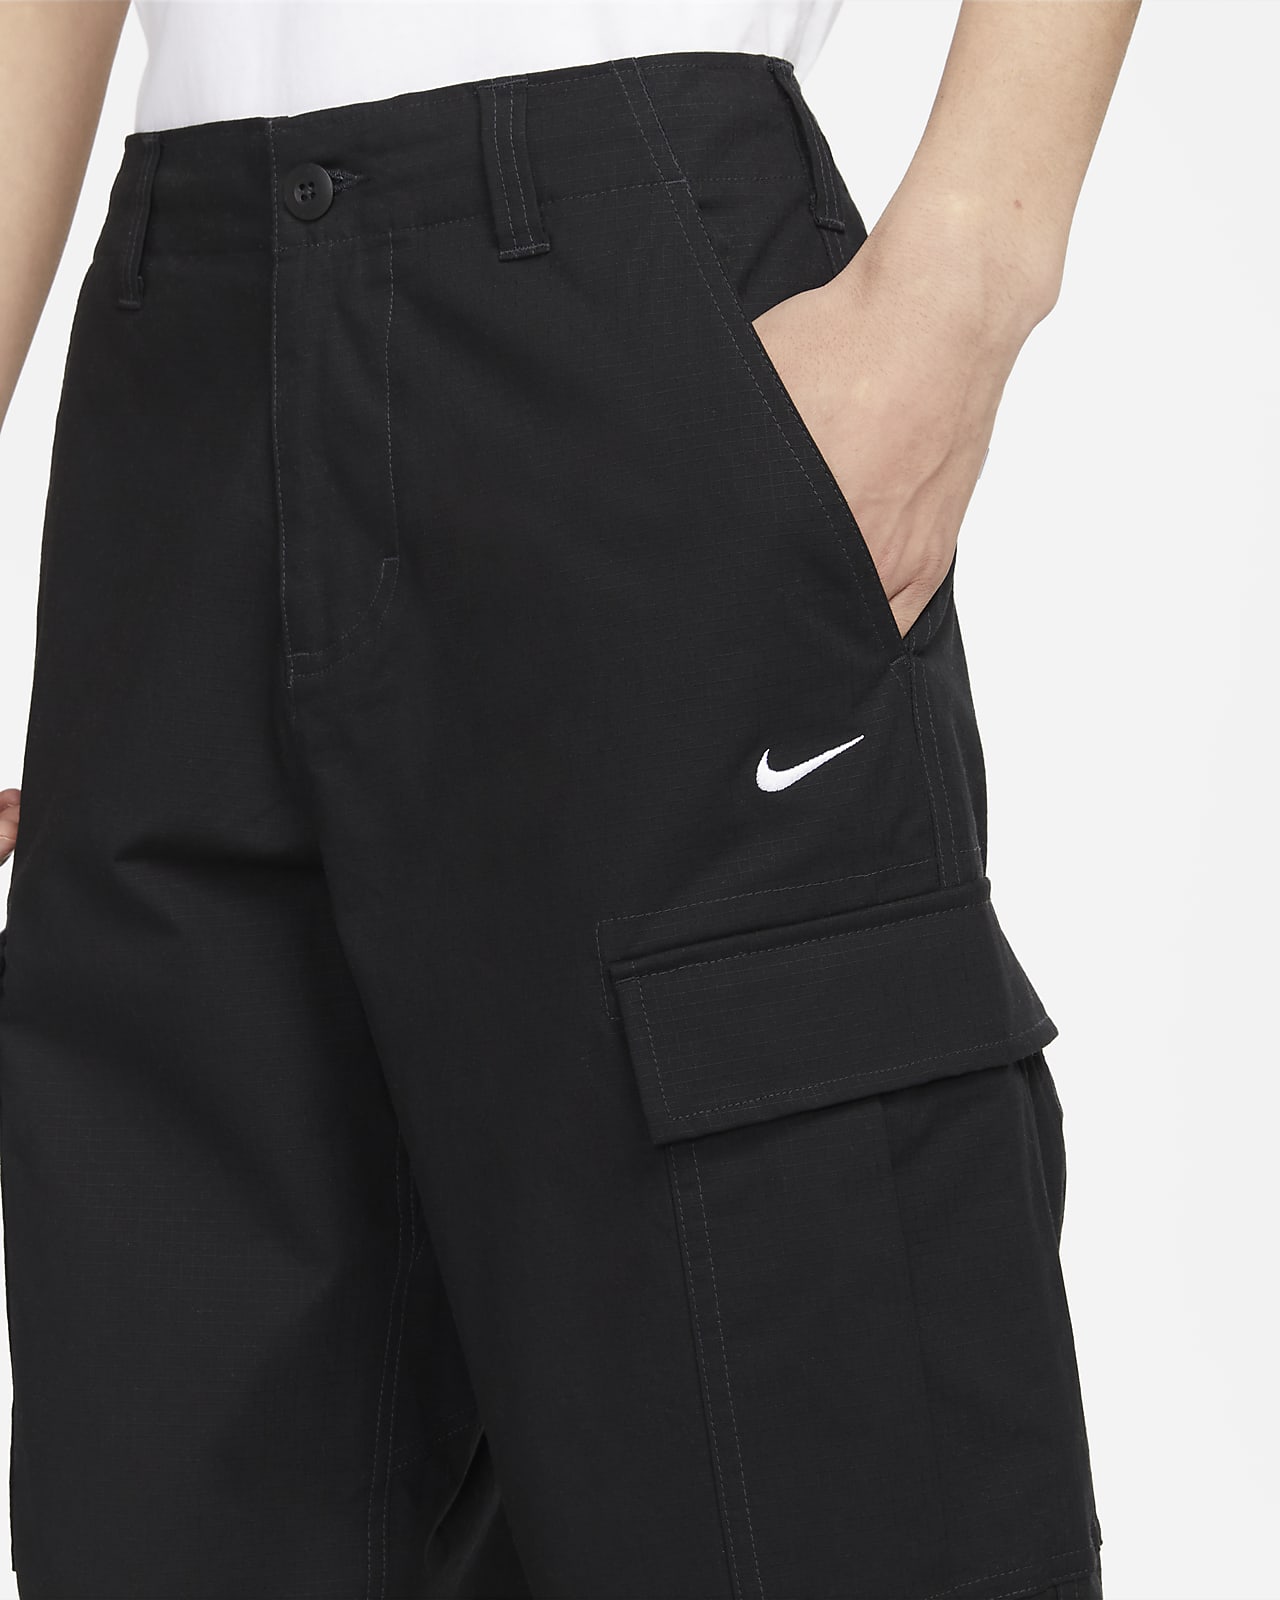 Nike | Sportswear Club Fleece Men's Cargo Pants | Closed Hem Fleece Jogging  Bottoms | SportsDirect.com